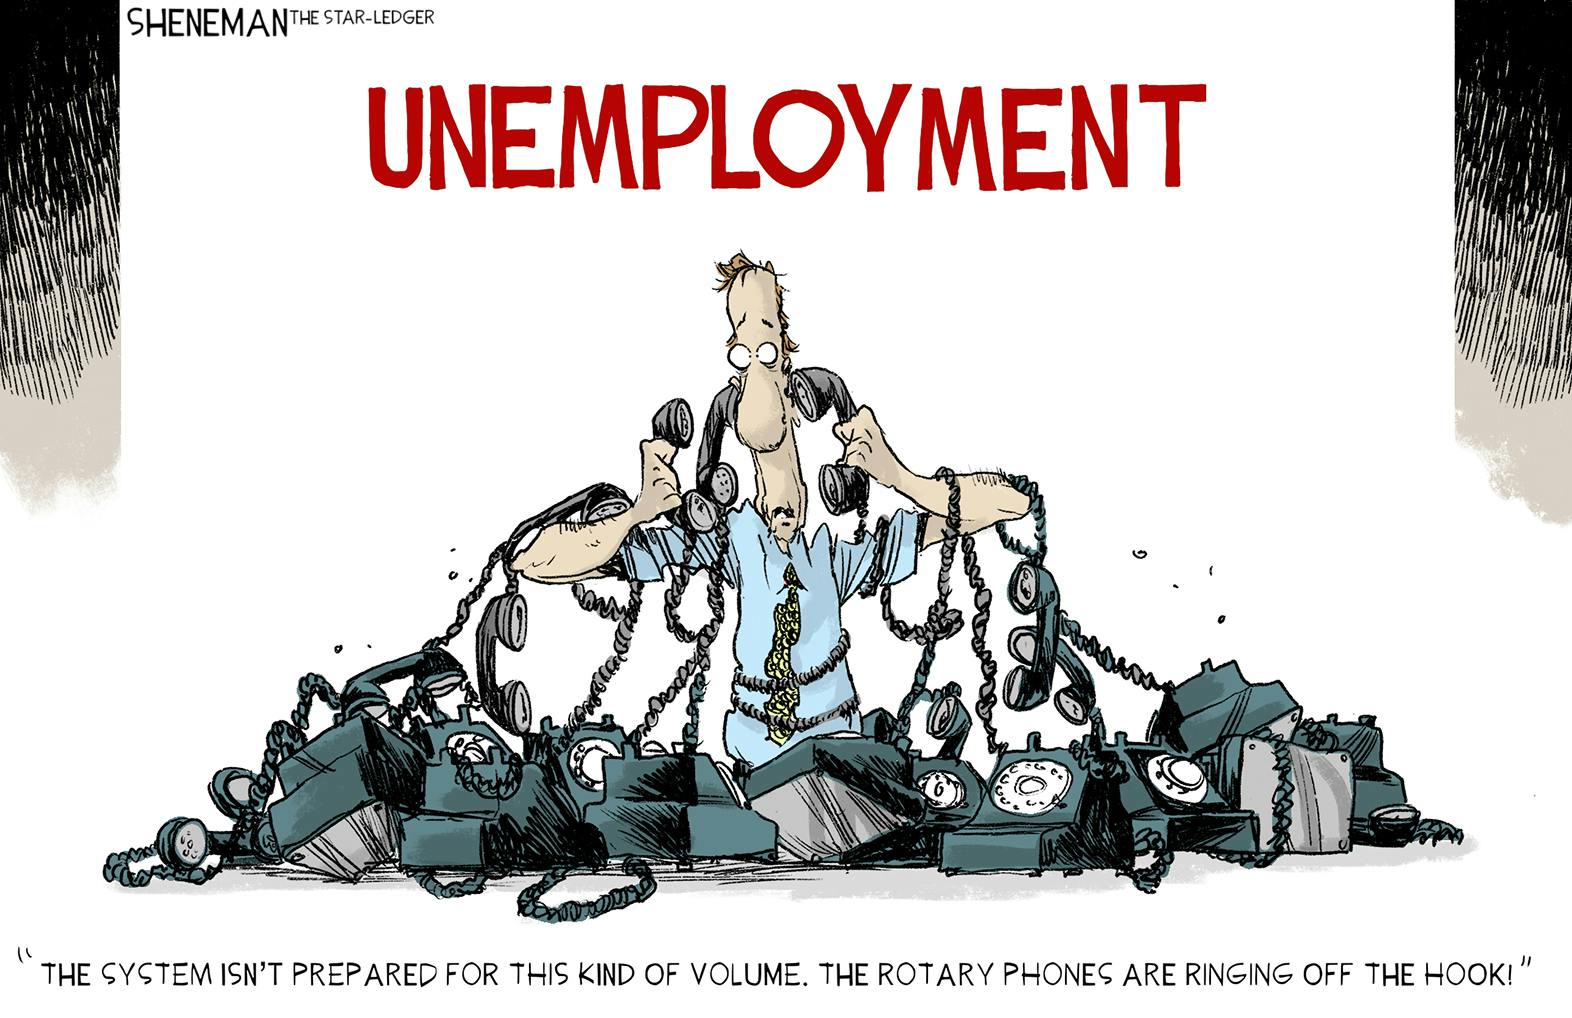 Editorial cartoon: Drew Sheneman on unemployment